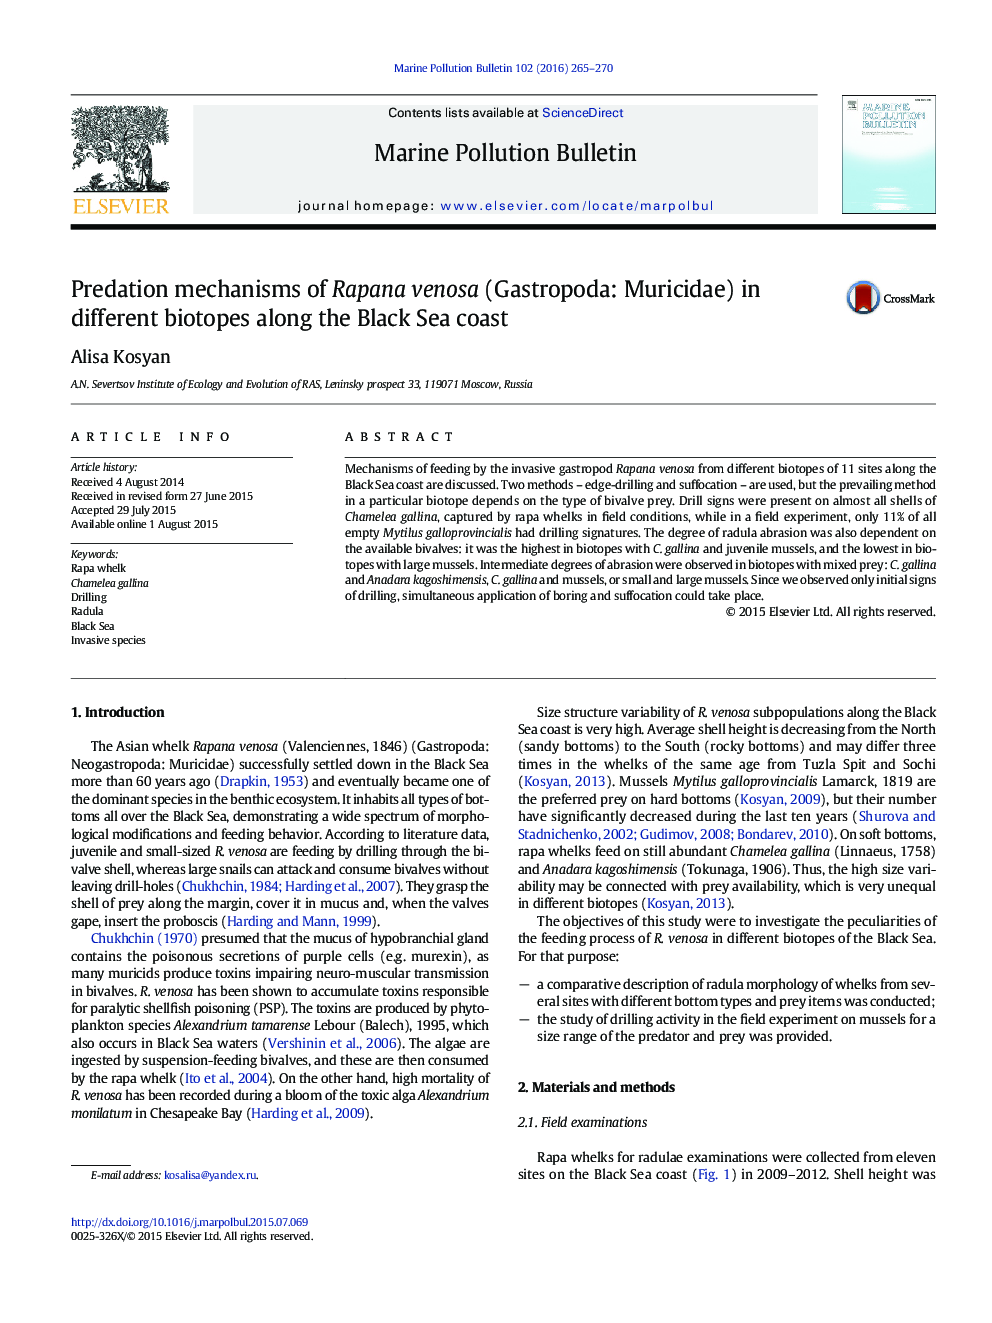 مکانیزم های پیشگیری از ونازای Rapana (Gastropoda: Muricidae) در بیوتوپی های مختلف در امتداد ساحل دریای سیاه